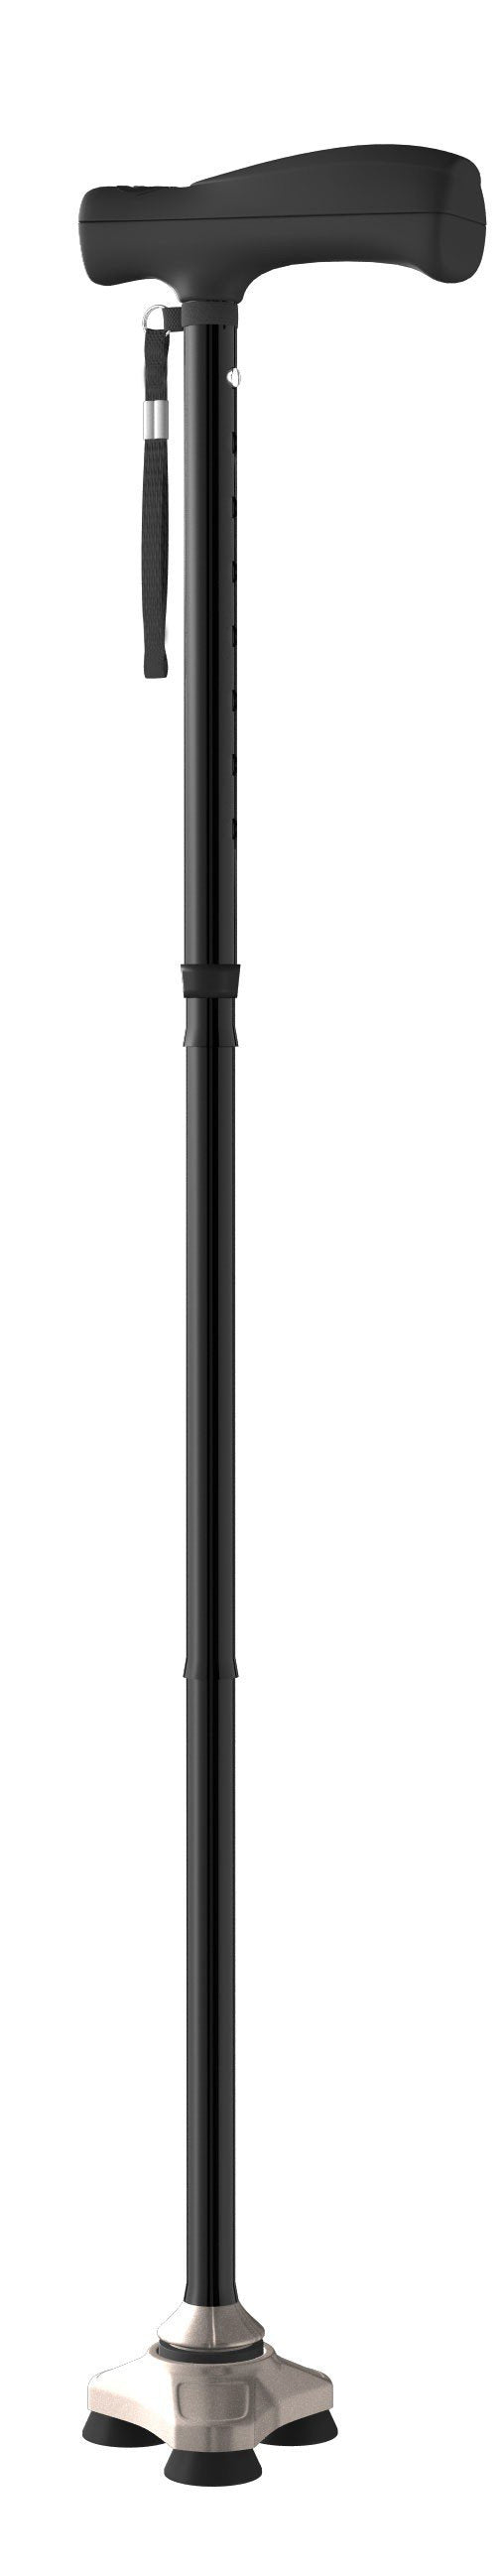 Folding Cane HurryCane® Freedom Edition™ Aluminum 30-1/2 to 37-1/2 Inch Height Black